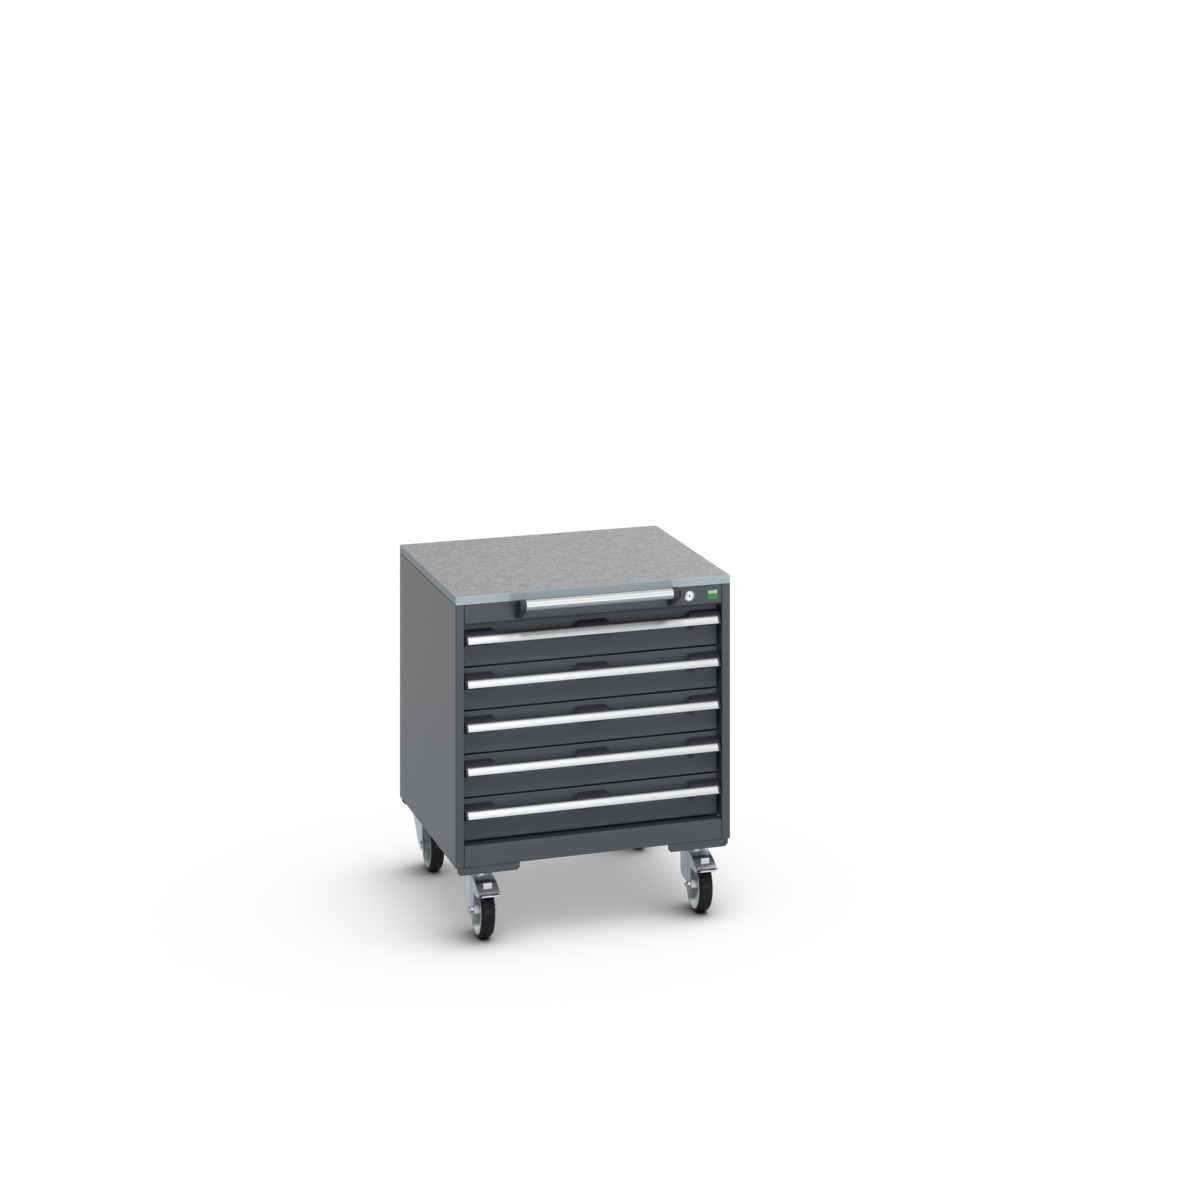 40402146.77V - cubio mobile cabinet